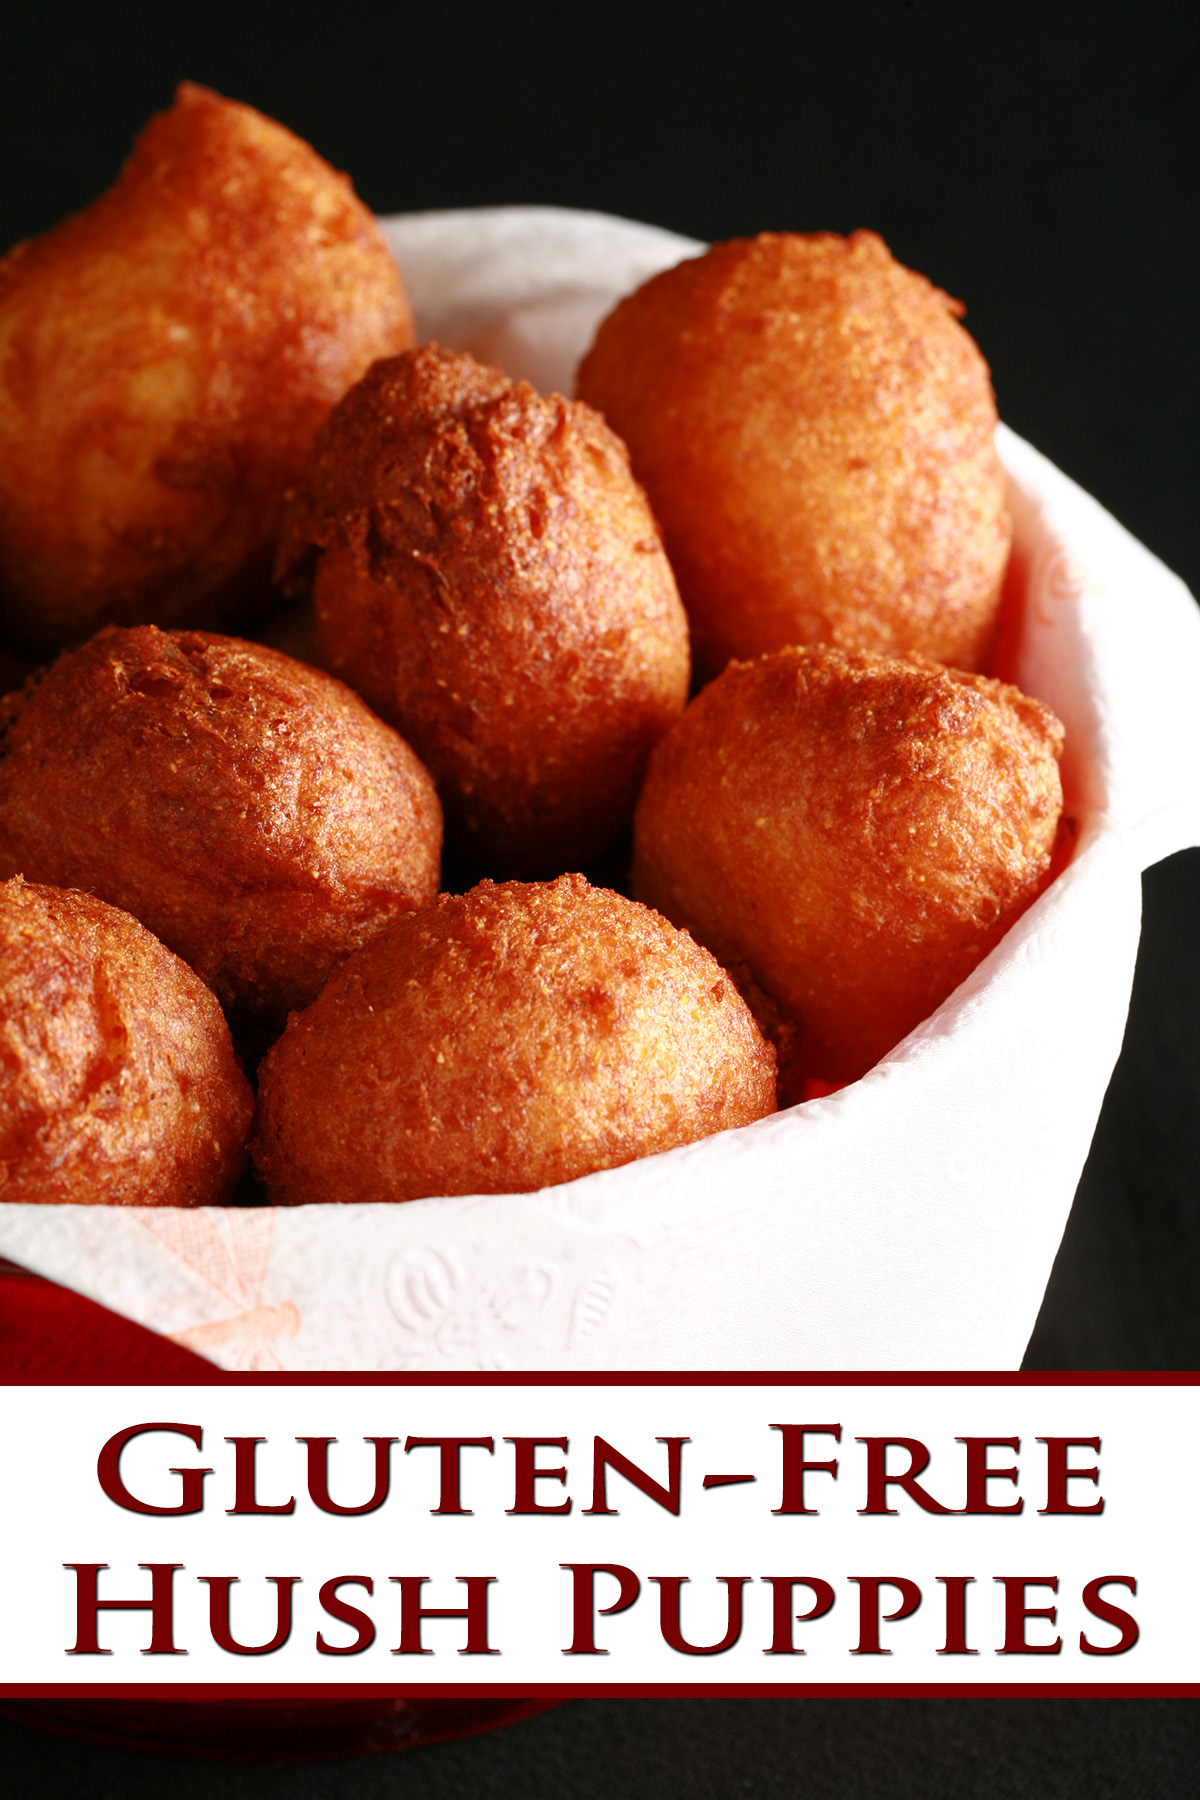 A bowl of gluten-free hush puppies - little balls of deep fried cornmeal dough.